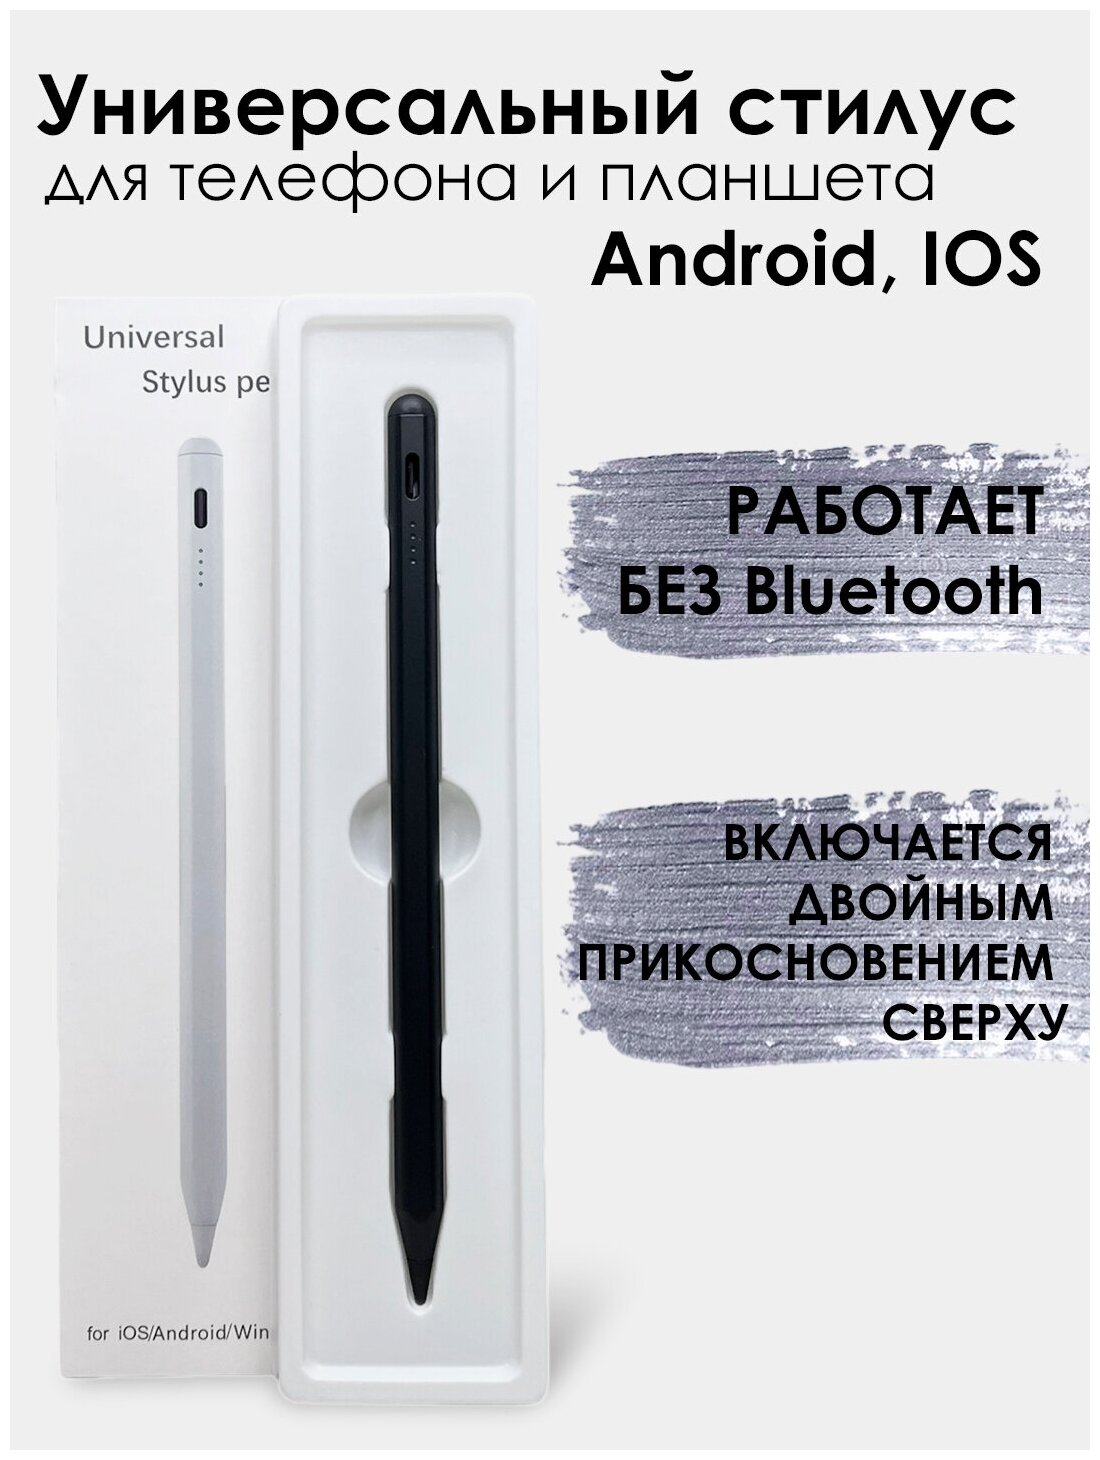 Универсальный стилус для телефона и планшета Android iPad IOS работает без Bluetooth